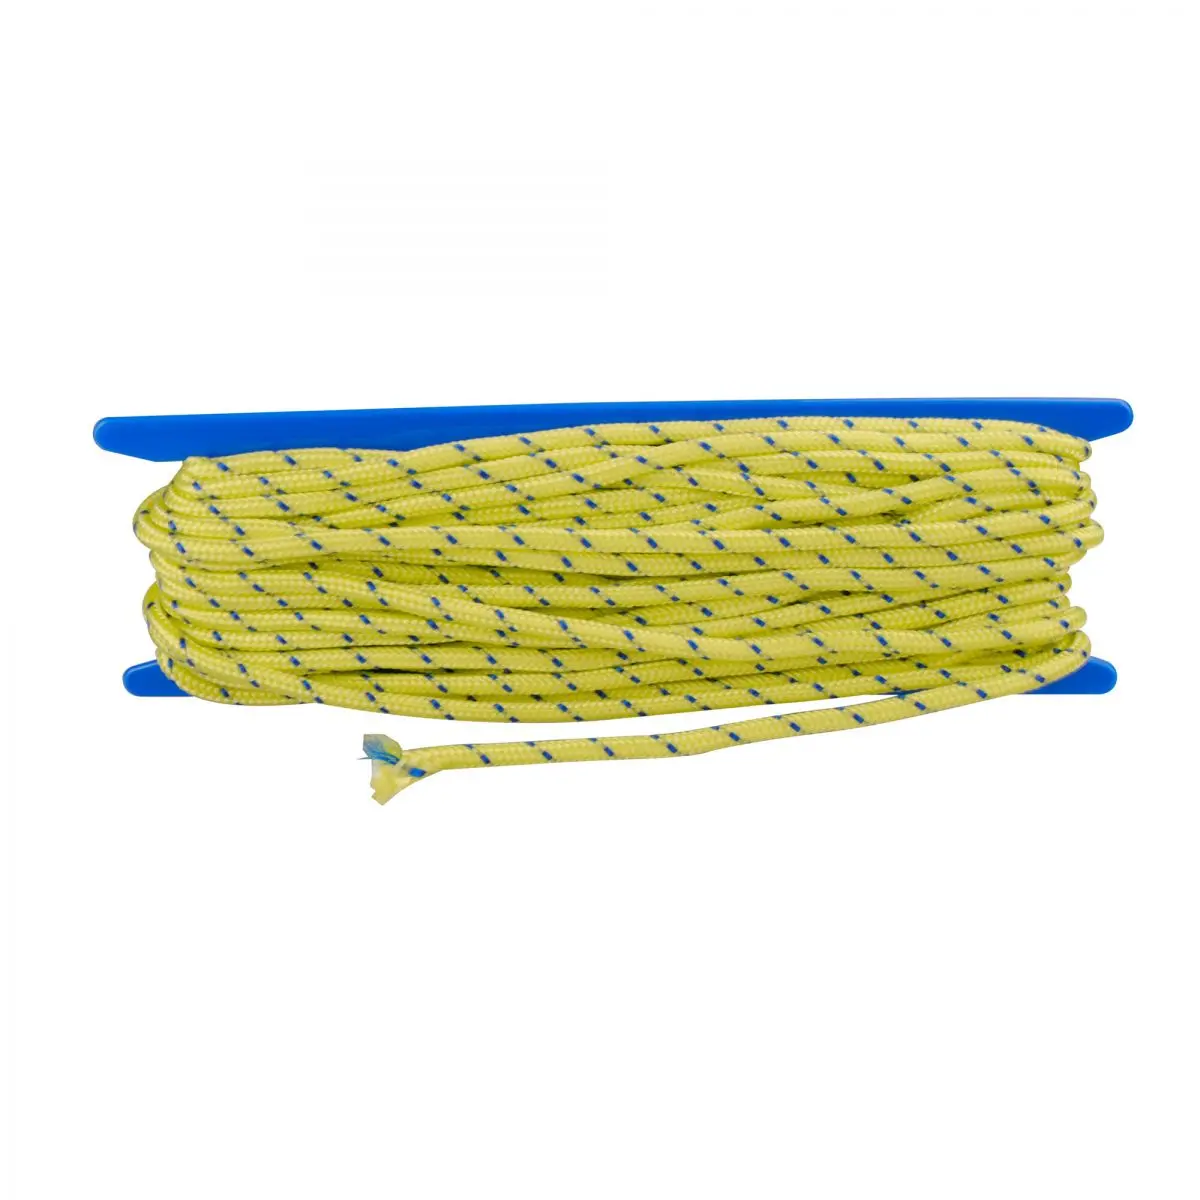 Vodiace lano - žlté, 20 m x 6 mm, balené SB